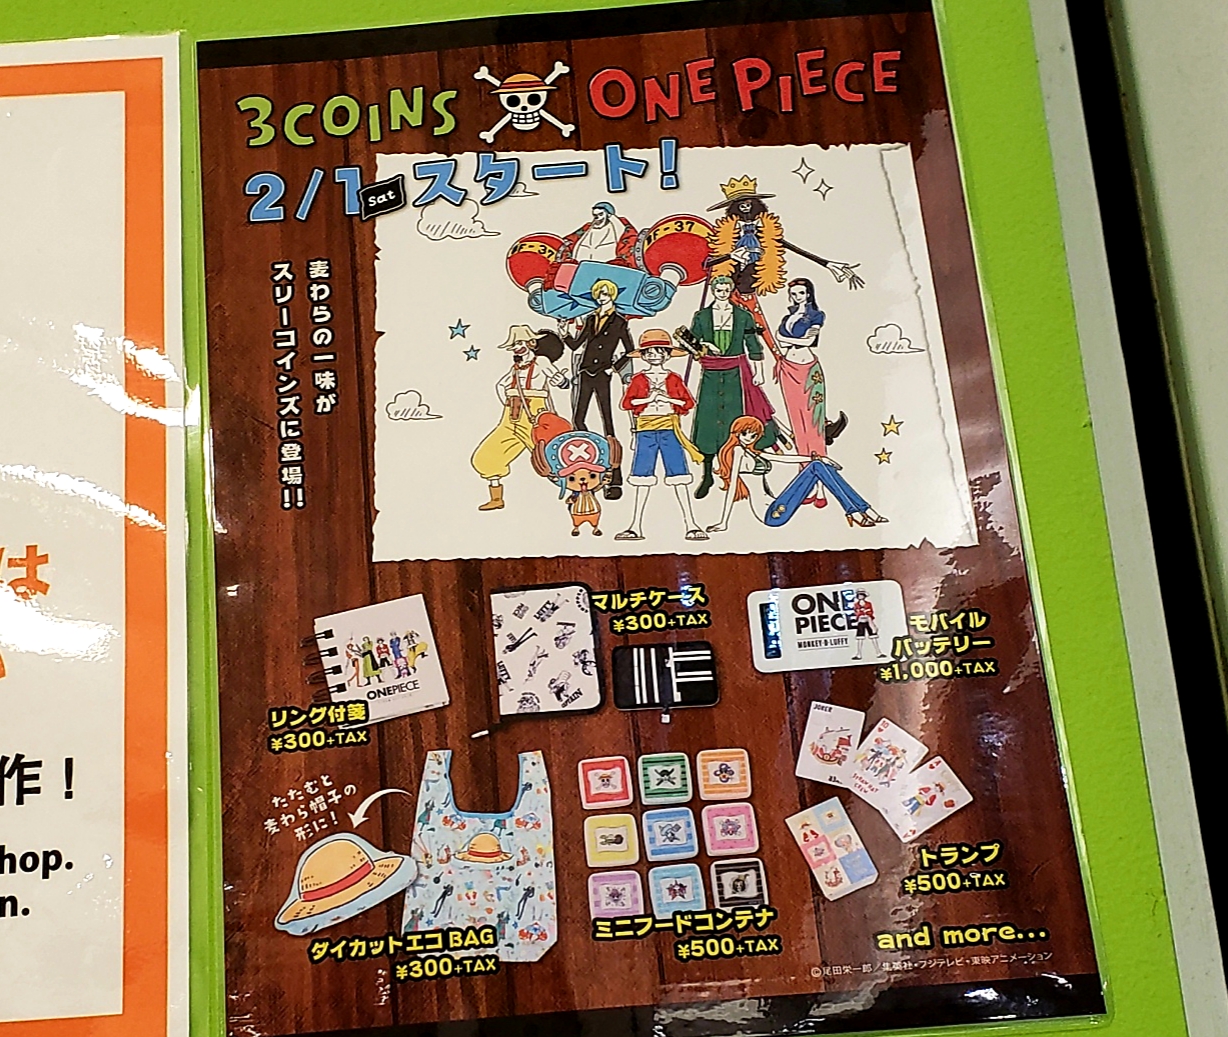 橿原市 イオンモール橿原の 3coins さん One Pieceとのコラボグッズ販売初日は 混雑を避けるため整理券が配布されます 号外net 大和高田市 橿原市